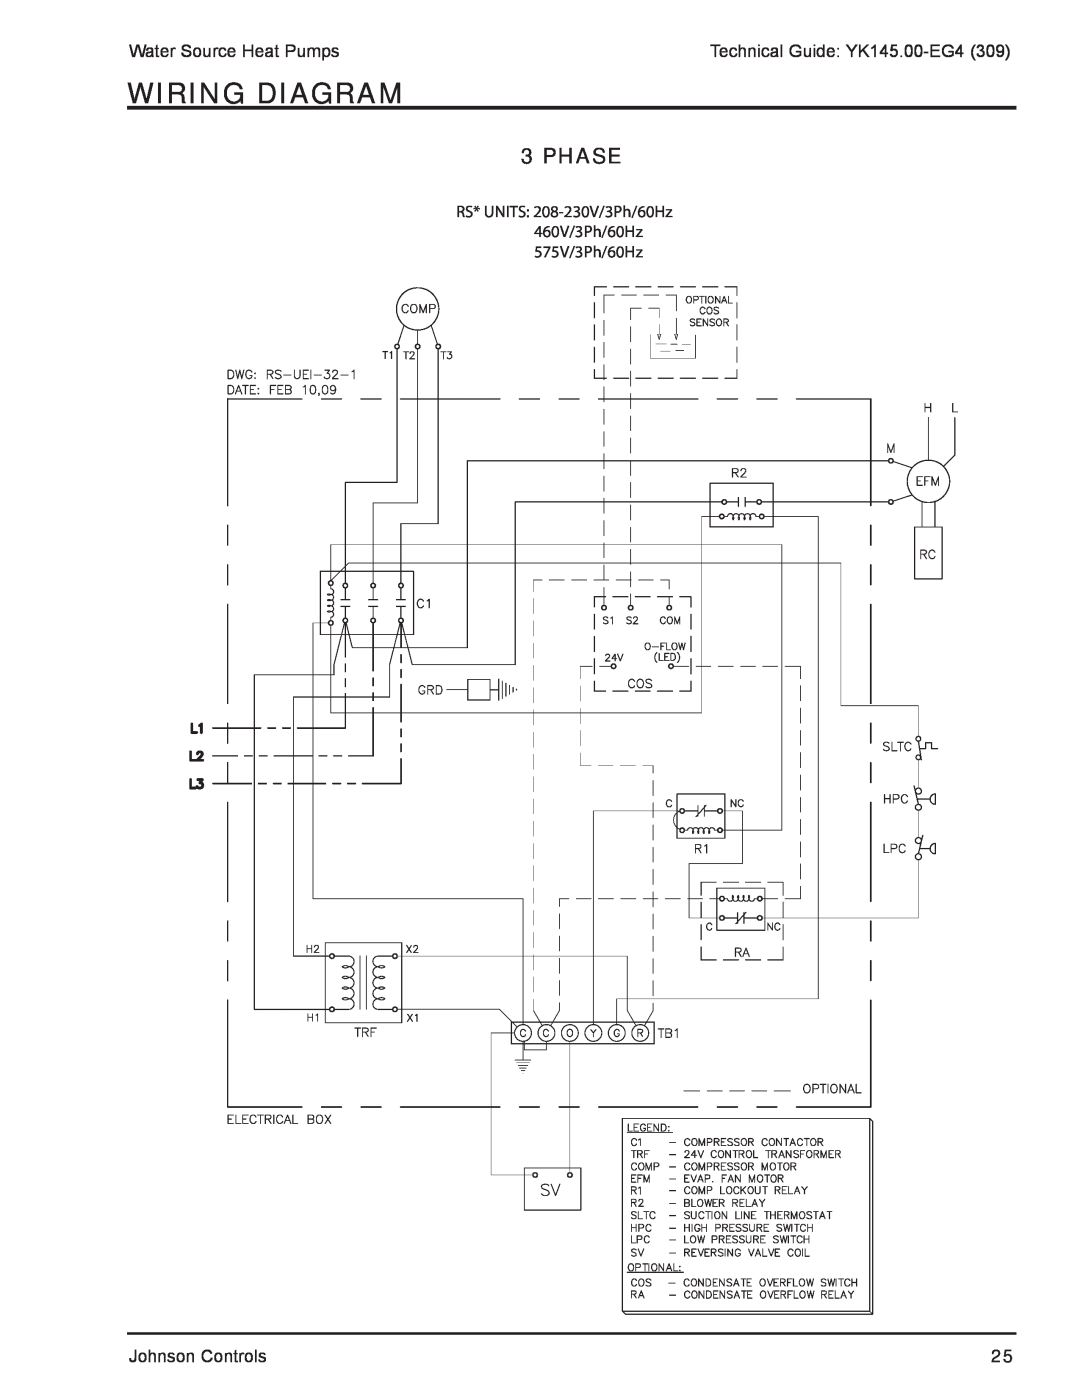 York YK145.00-EG4 manual Phase, Wiring Diagram 